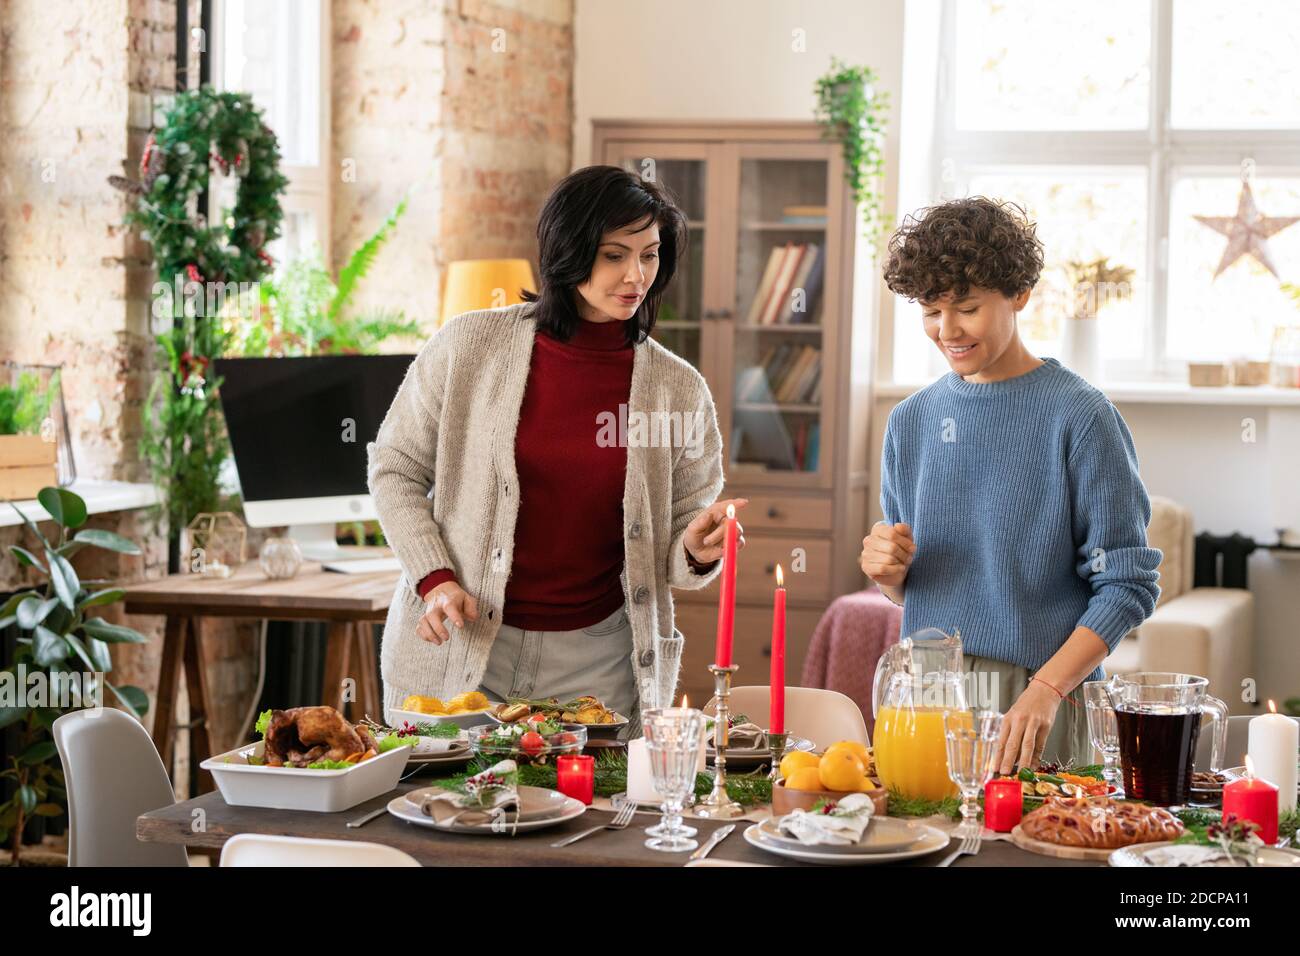 Zwei Frauen diskutieren, wo man dieses oder jenes hausgemachte setzen Essen am servierten Tisch Stockfoto